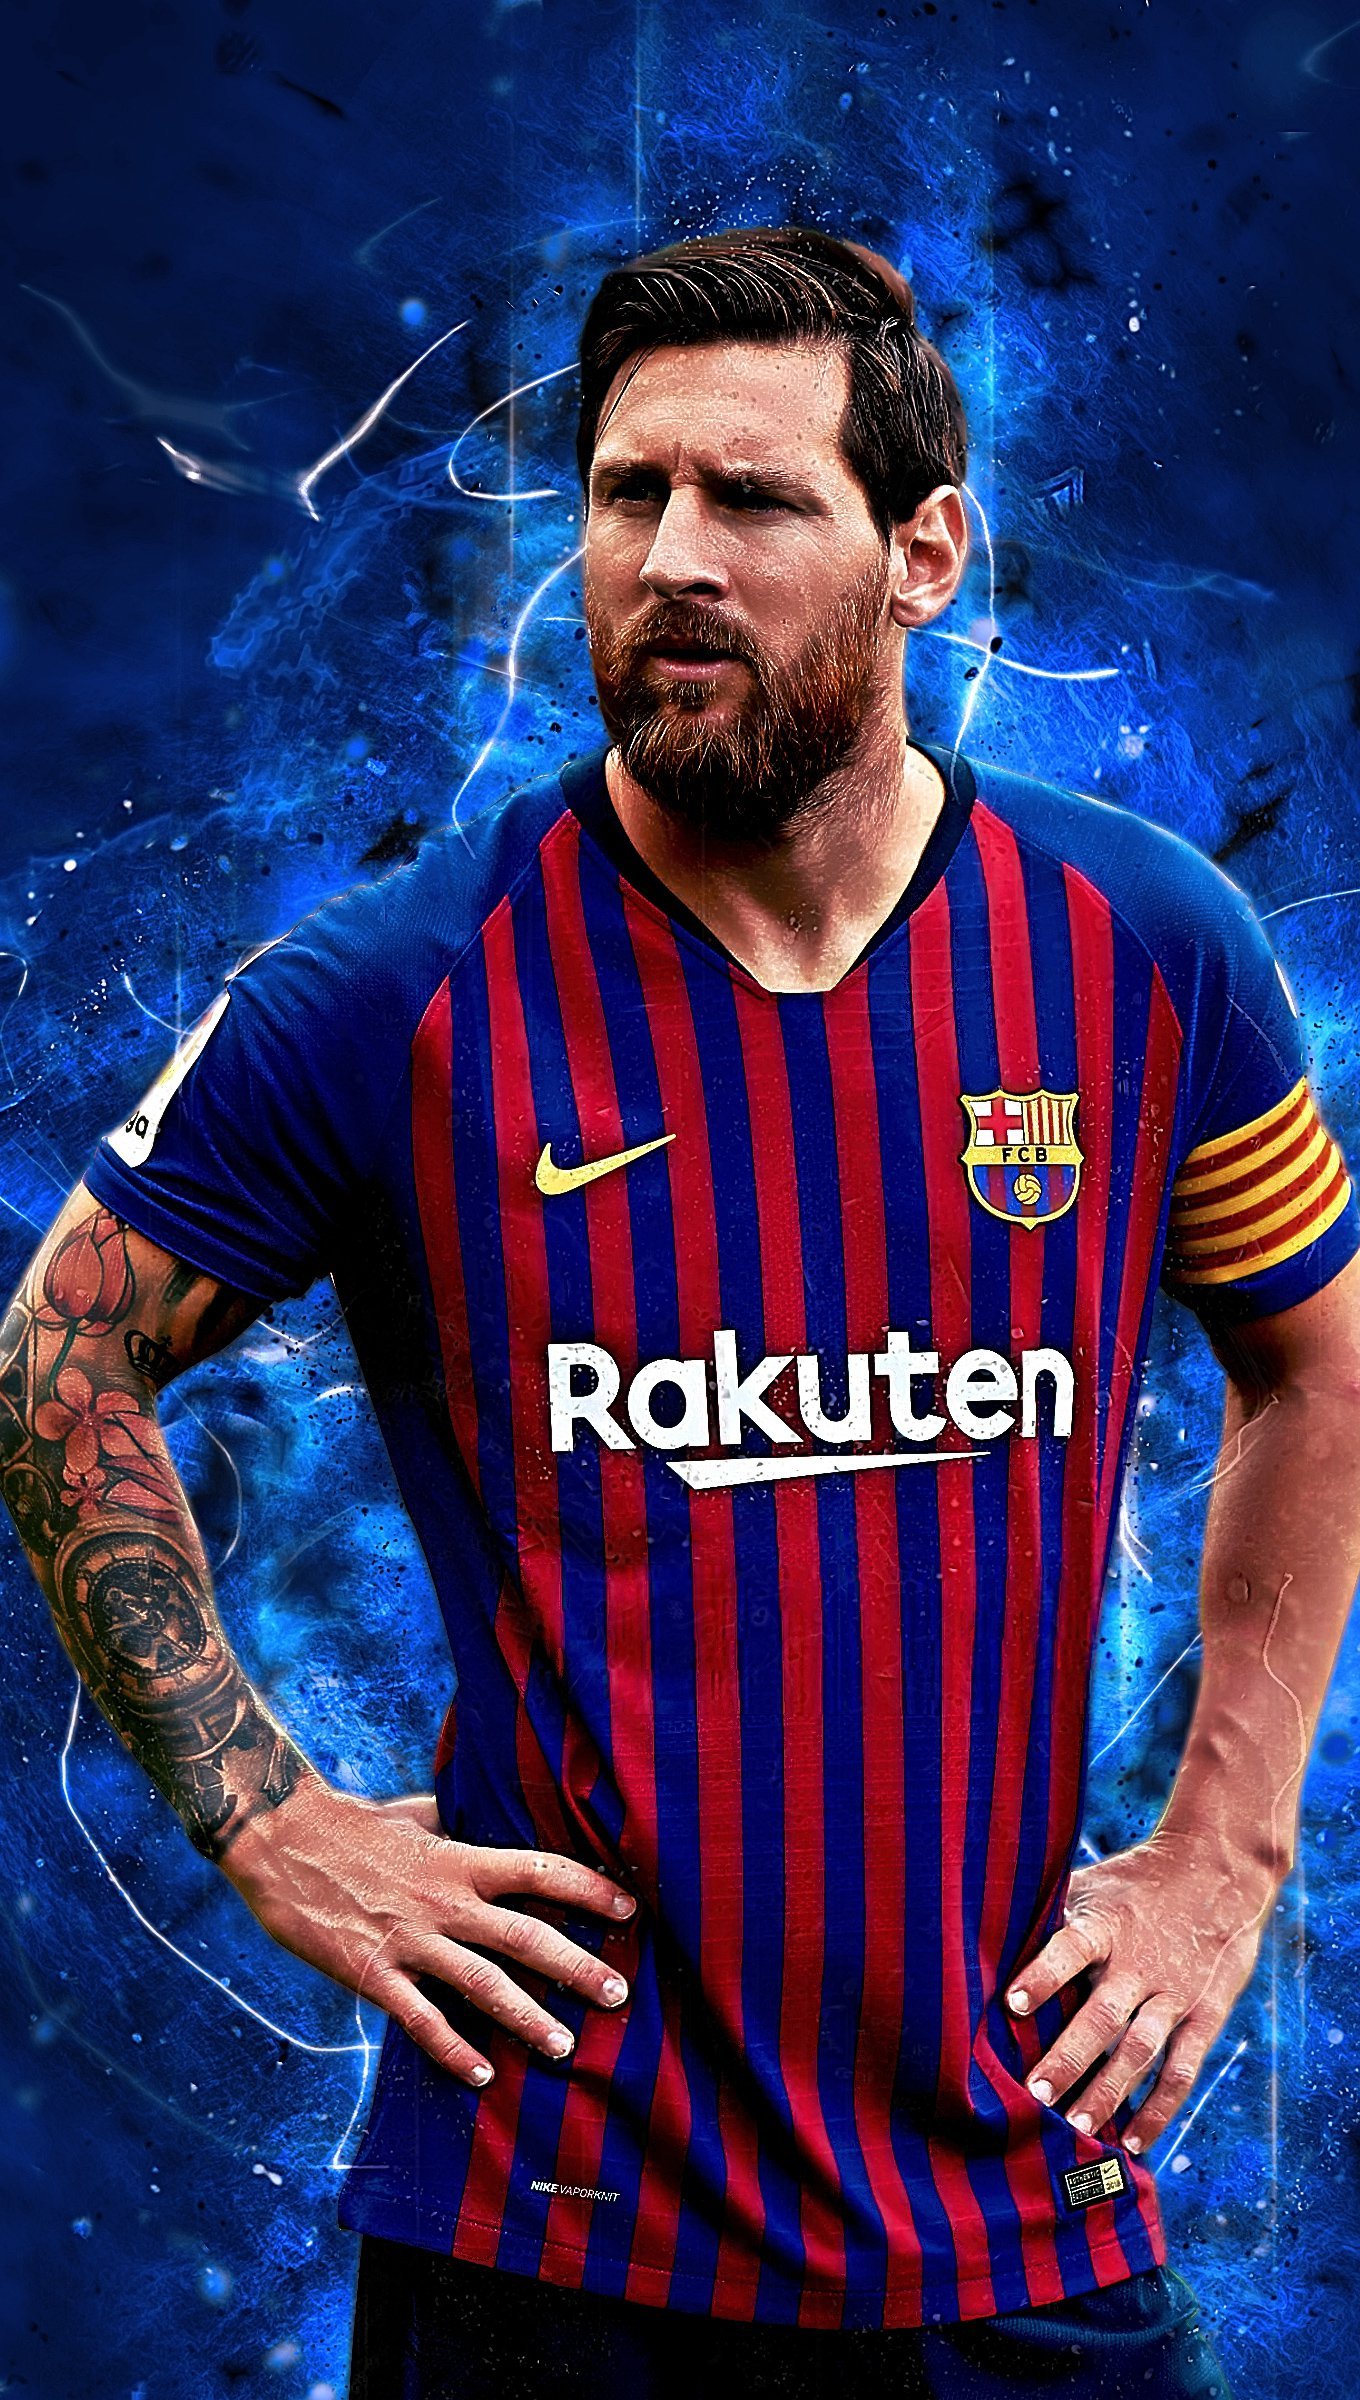 Barcelona là nơi mà Messi đã khởi đầu sự nghiệp và đã trở thành người hùng của rất nhiều người hâm mộ bóng đá. Hãy trang trí điện thoại của mình với hình nền Lionel Messi Barcelona để tưởng nhớ và cổ vũ sự nghiệp của cầu thủ xuất sắc này.